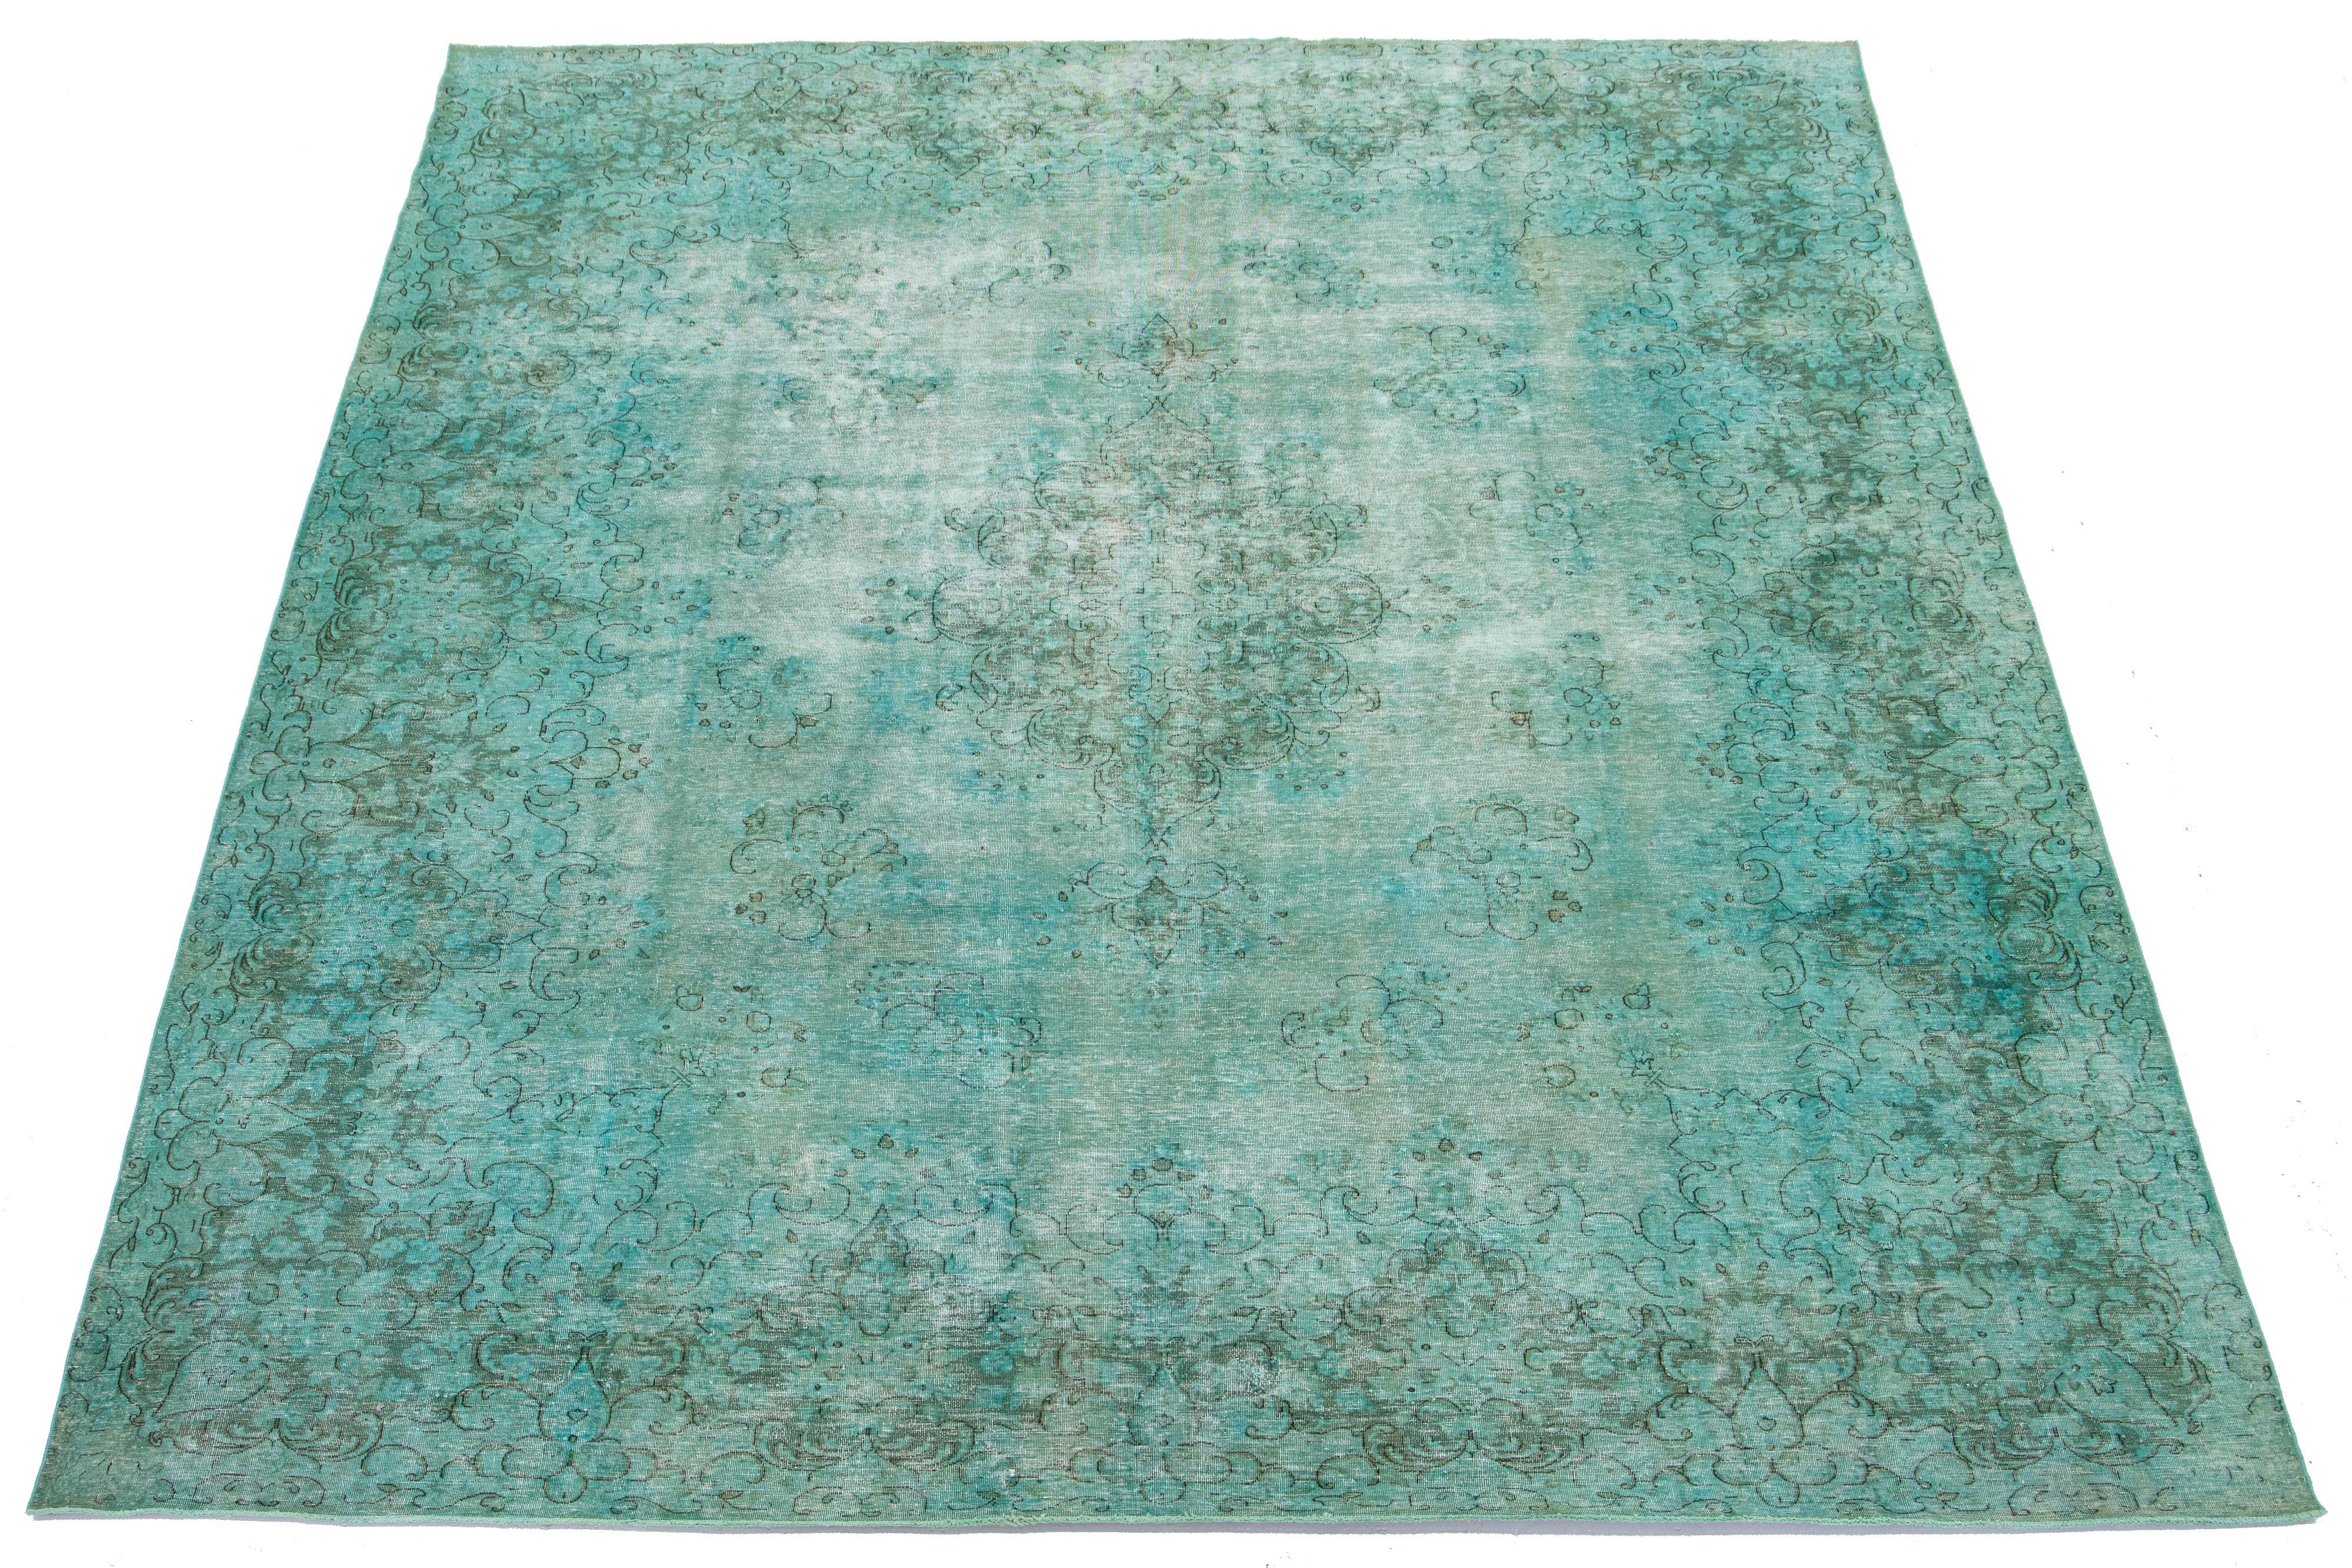 Il s'agit d'un ancien tapis persan en laine noué à la main avec un champ vert clair. Il présente un motif floral en médaillon avec des accents gris.

Ce tapis mesure 9'11'' x 13'2